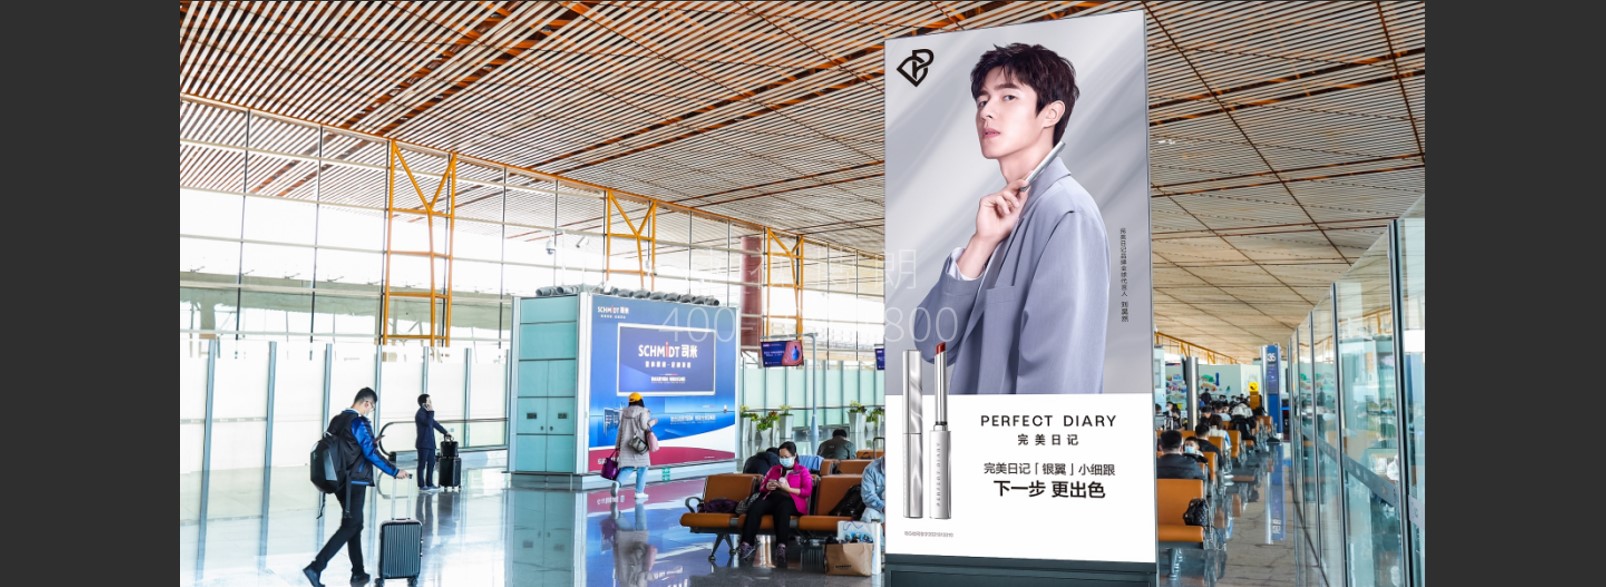 北京首都机场广告-T3C国内候机区图腾灯箱套装